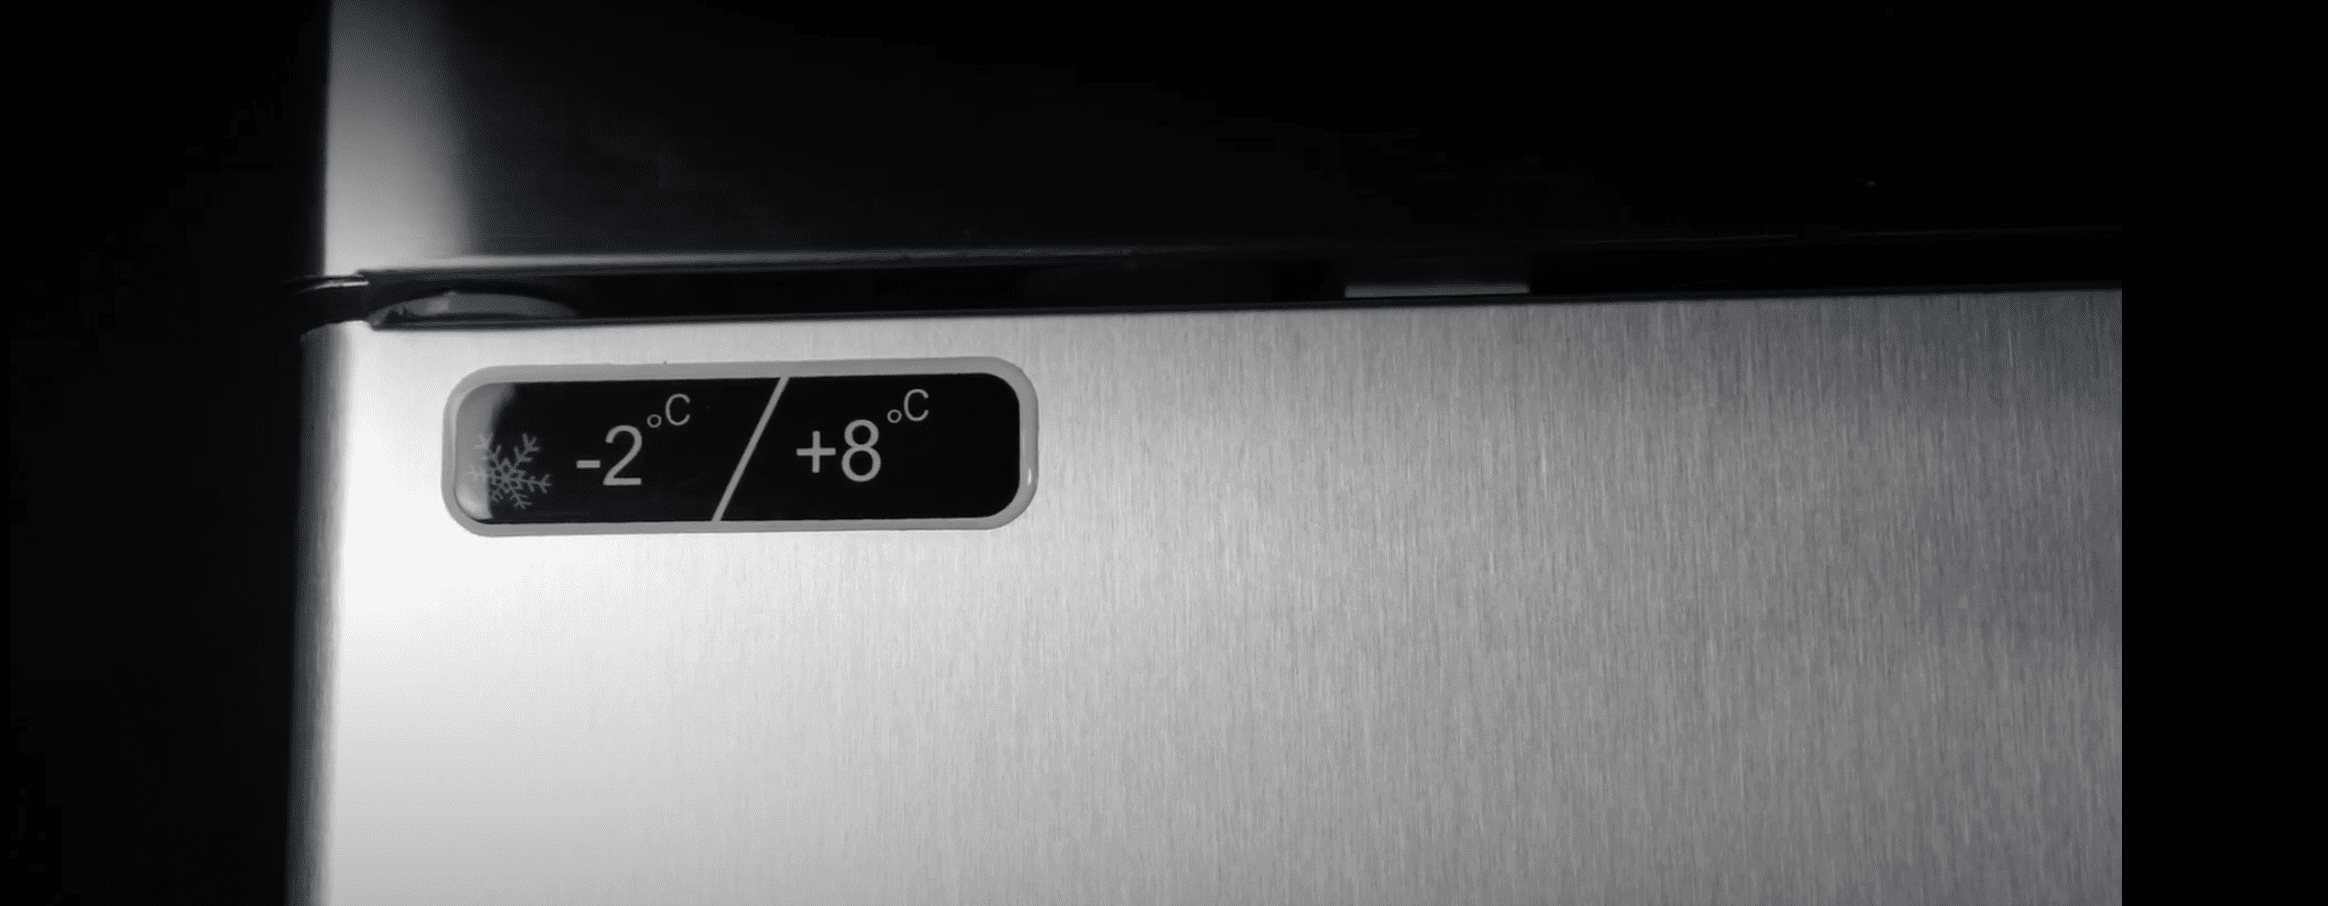 L'image met en évidence l'indication de température sur l'armoire congélateur, offrant un contrôle précis et une surveillance constante de la température interne. 